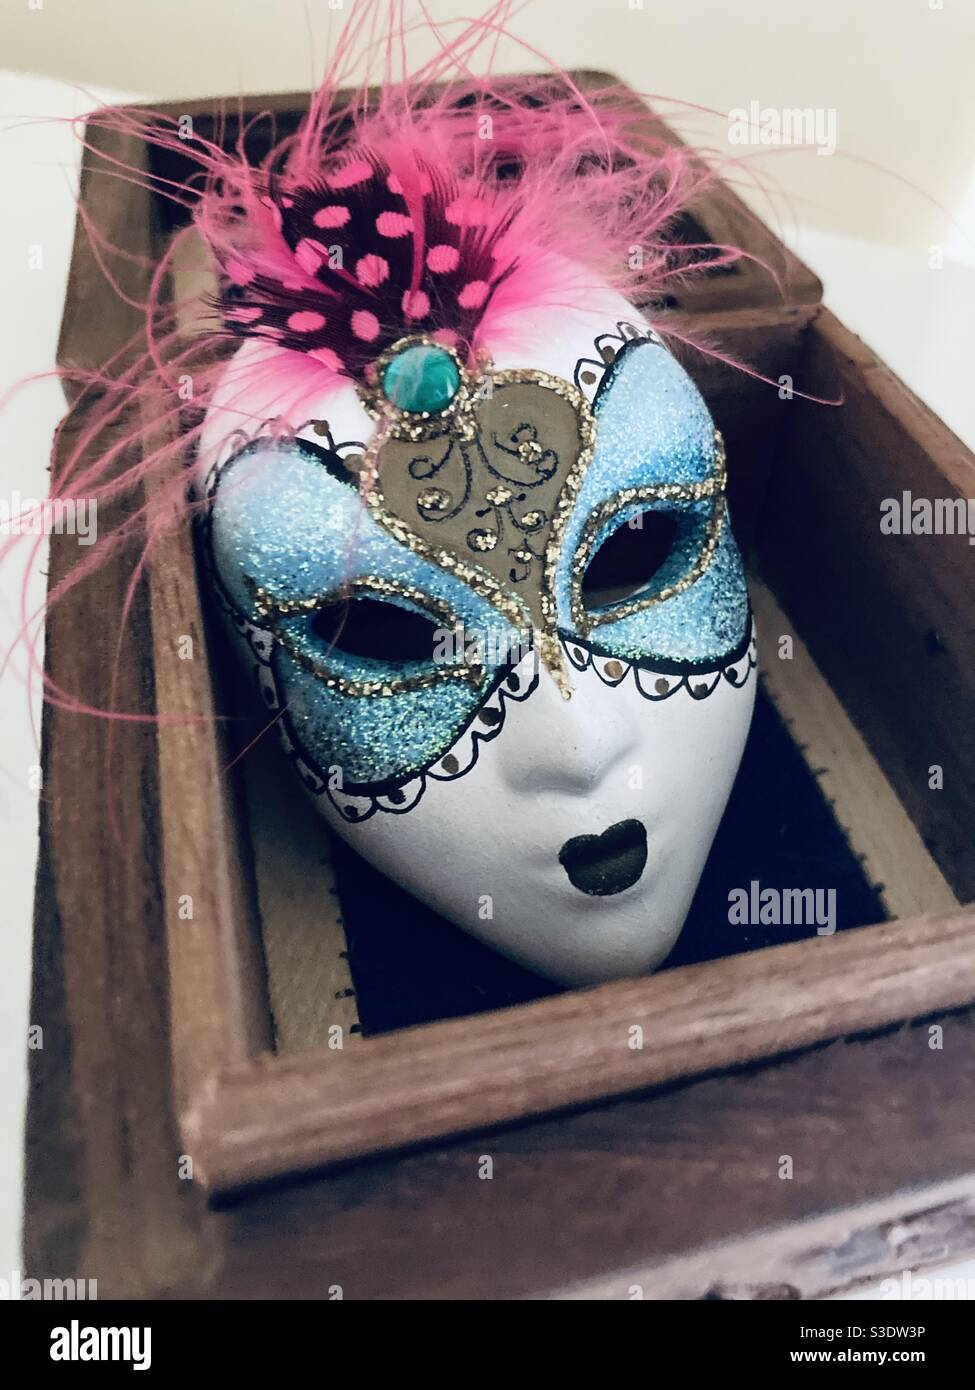 Masque en céramique dans une boîte Banque D'Images